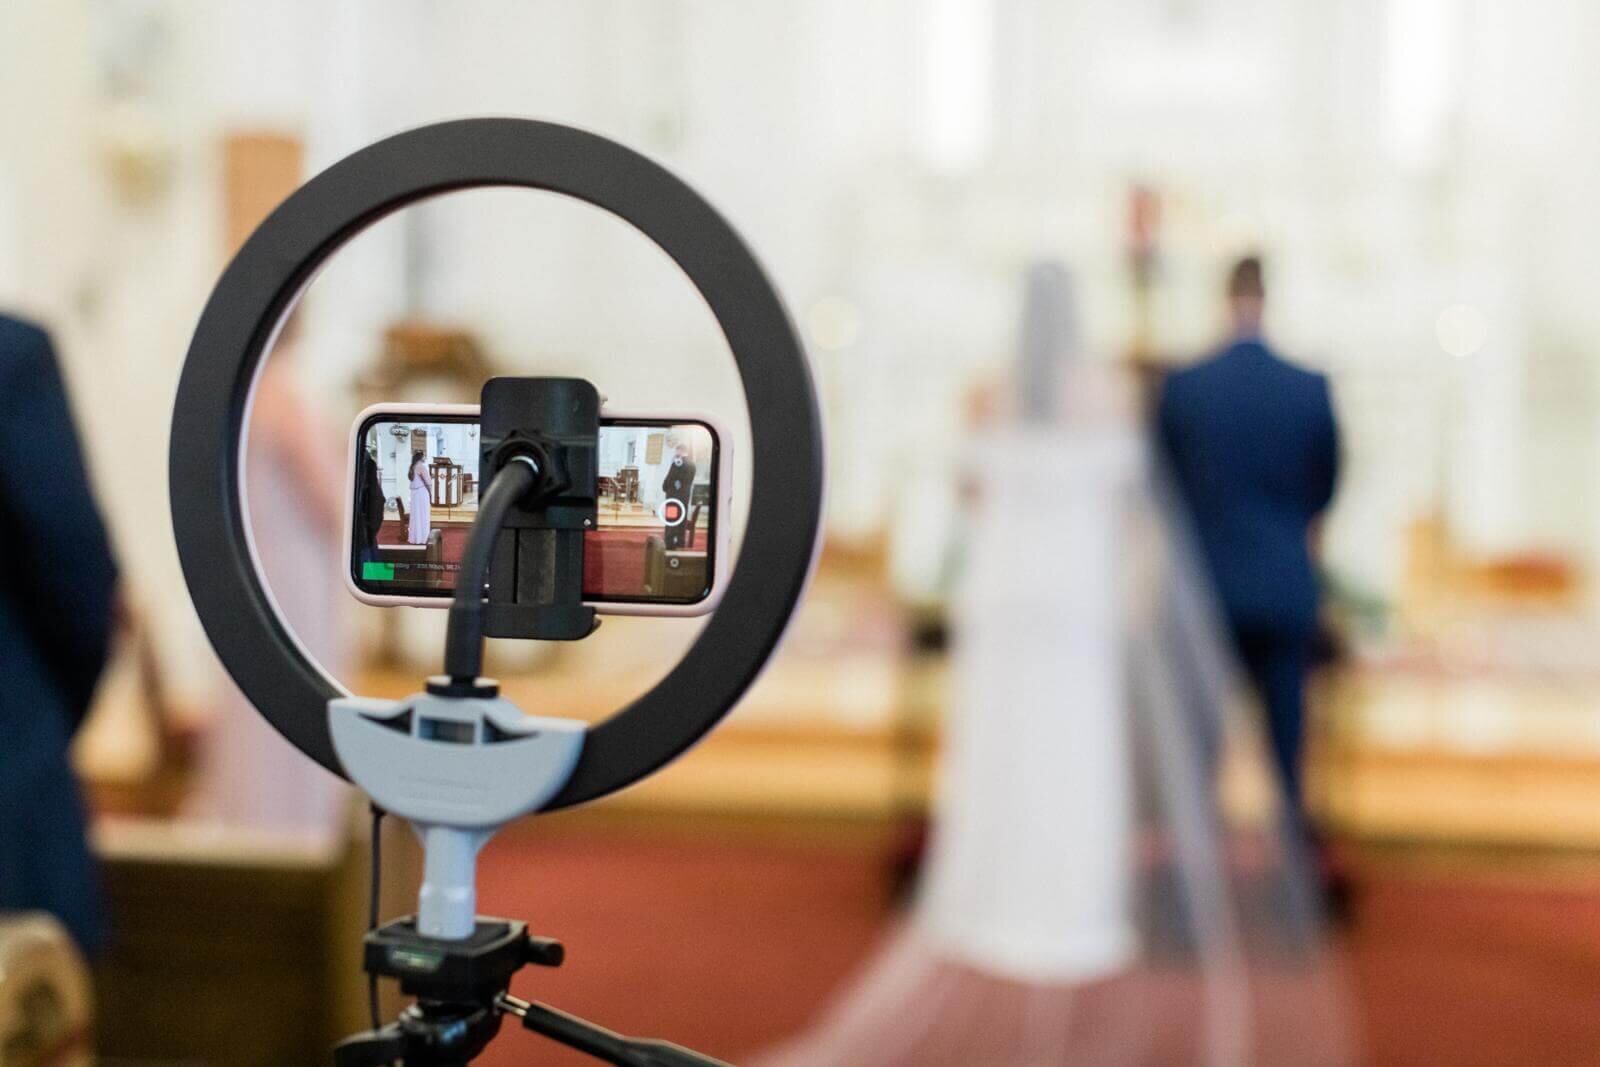 Kể từ khi dịch bệnh gây ra nhiều khó khăn cho việc tổ chức hôn lễ trong bối cảnh người dân phải hạn chế tụ tập đông người, nhiều cặp đôi buộc phải xem xét các phương án như phát sóng trực tiếp (livestream) lễ thành hôn hoặc cắt giảm tối đa khách tham dự. Ảnh: @AFP.